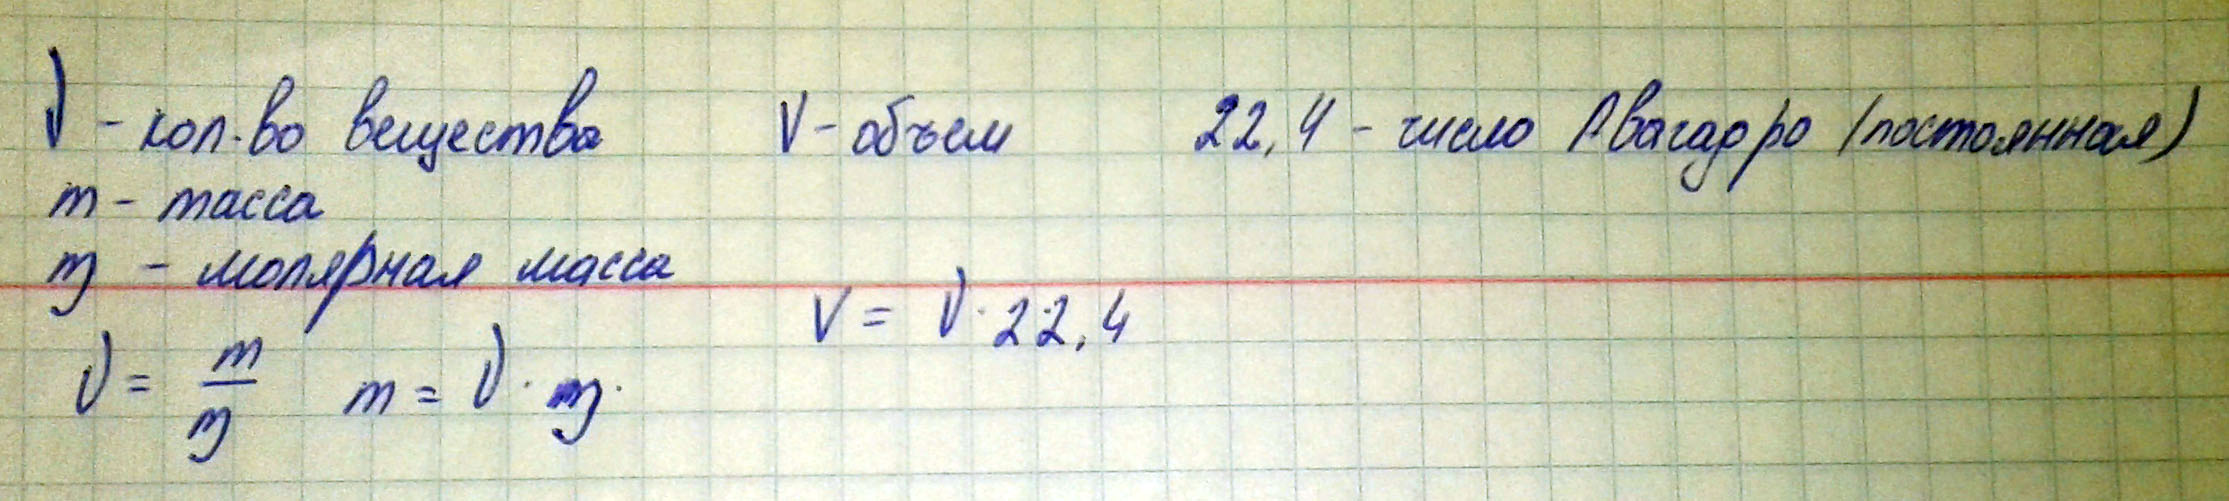 Напишите формулы и численные значения постоянных величин в формулах для расчета вещества, если: а) известна масса вещества; б) если известен объем вещества.